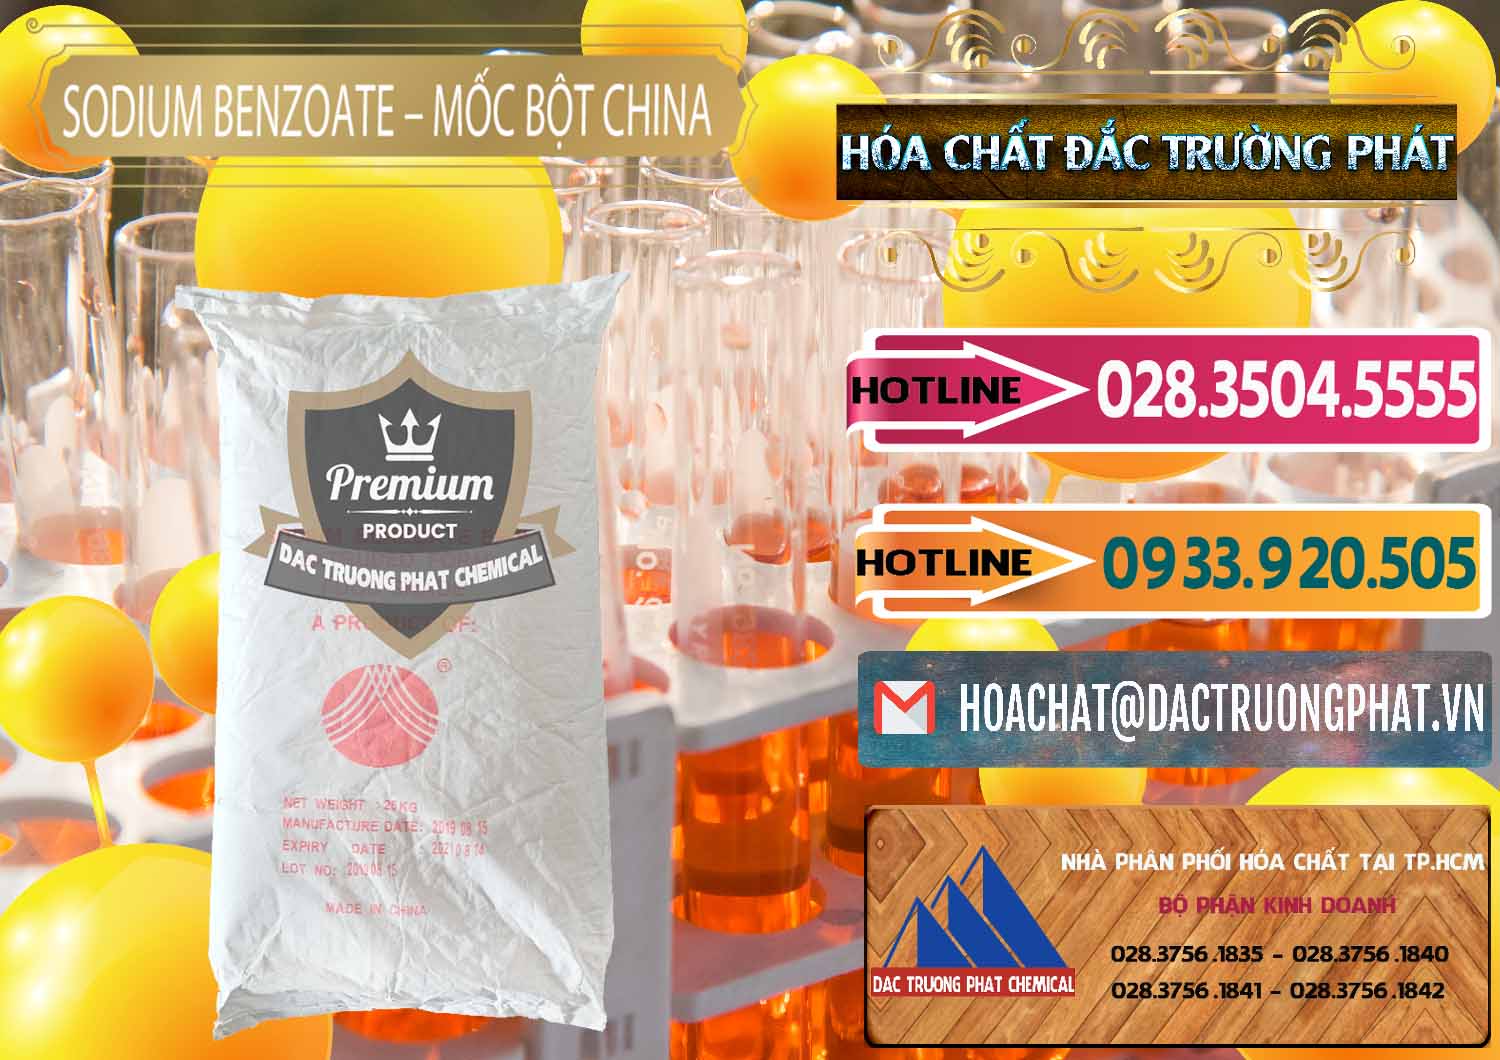 Nơi cung ứng & bán Sodium Benzoate - Mốc Bột Chữ Cam Food Grade Trung Quốc China - 0135 - Cty cung cấp & phân phối hóa chất tại TP.HCM - dactruongphat.vn